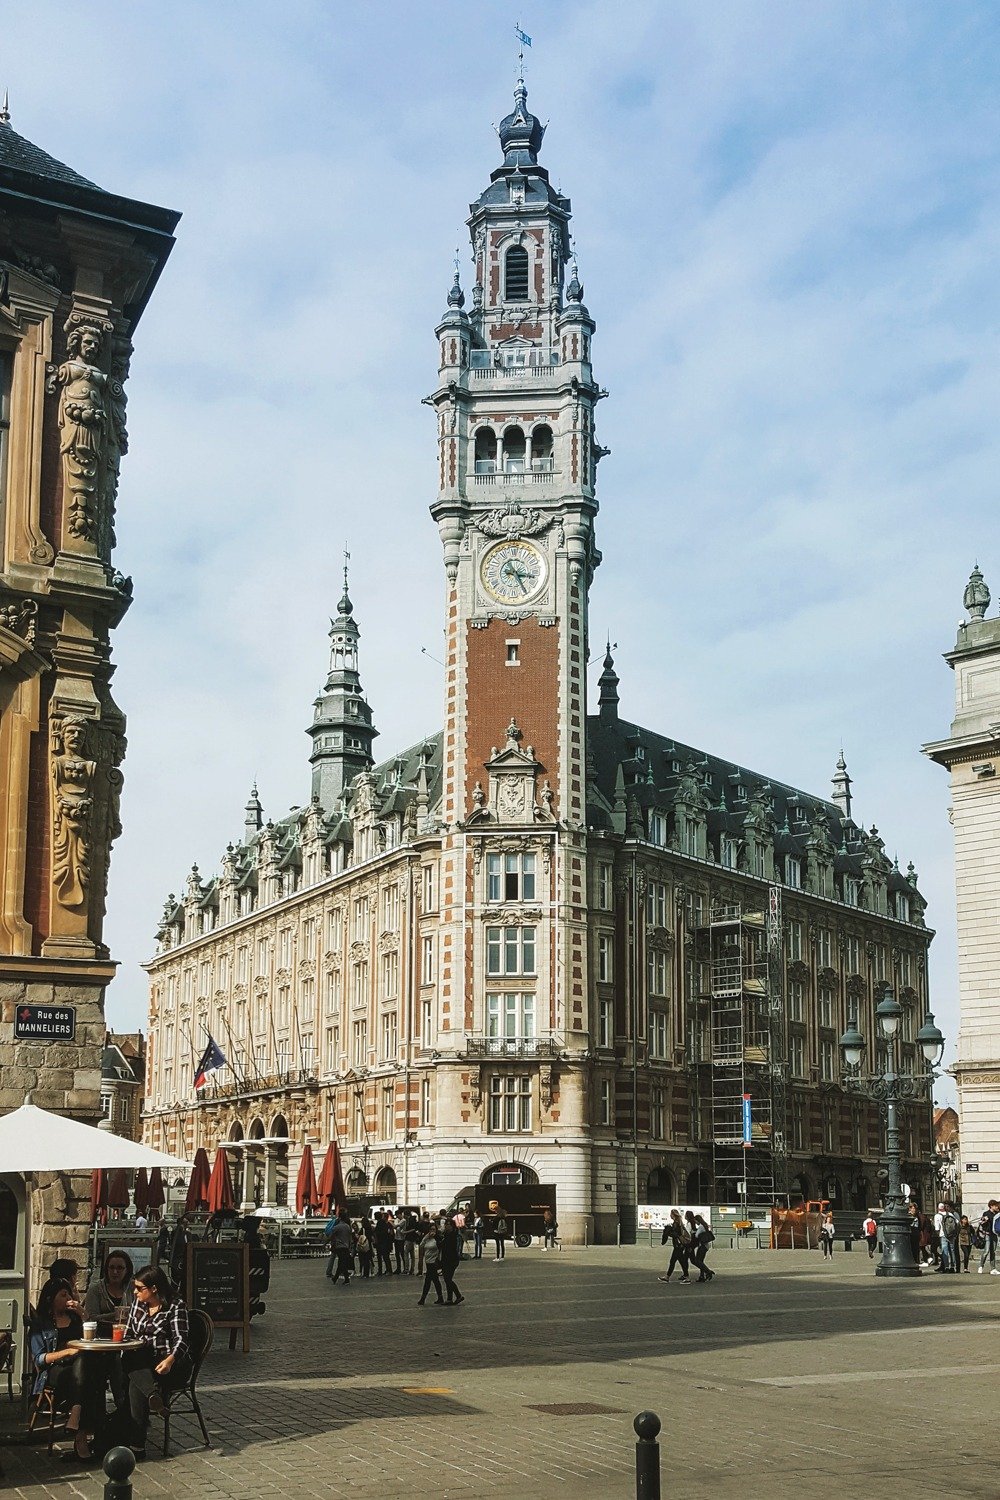 Meilleures villes françaises et destinations de week-end - Profitez d'une escapade culturelle et amusante à Lille !  Avec une belle architecture, l'un des meilleurs musées du pays et une cuisine unique, vous trouverez beaucoup de choses à voir, à faire et à manger lors d'un court week-end.